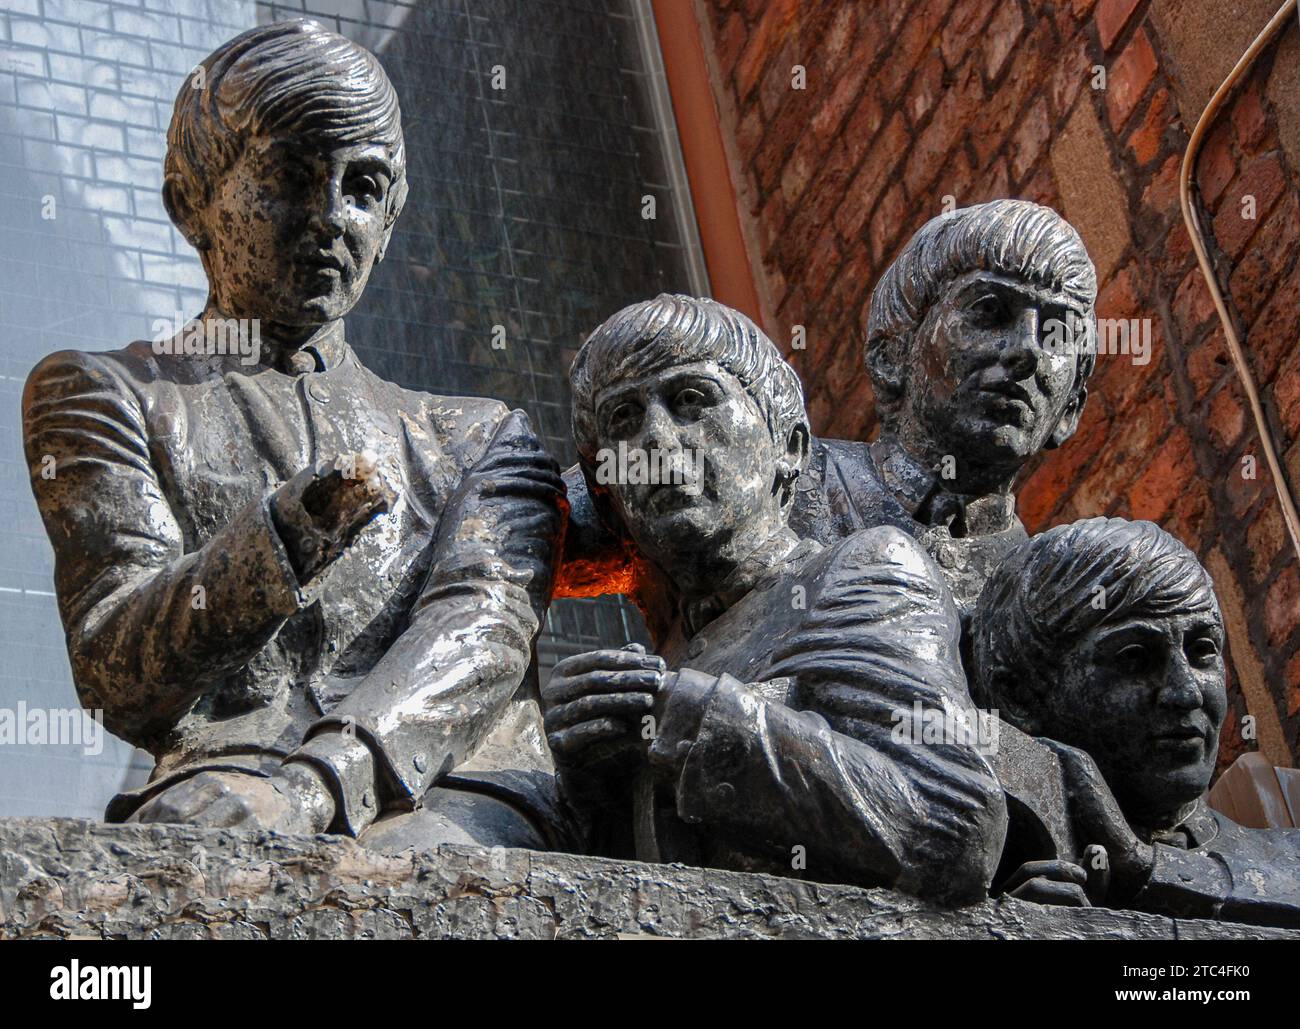 Die Skulptur der Beatles in der Matthew Street in Liverpool nennt sich selbst die bírthplace of Beatles, da sich der Cavern Club in dieser Straße befindet. Stockfoto